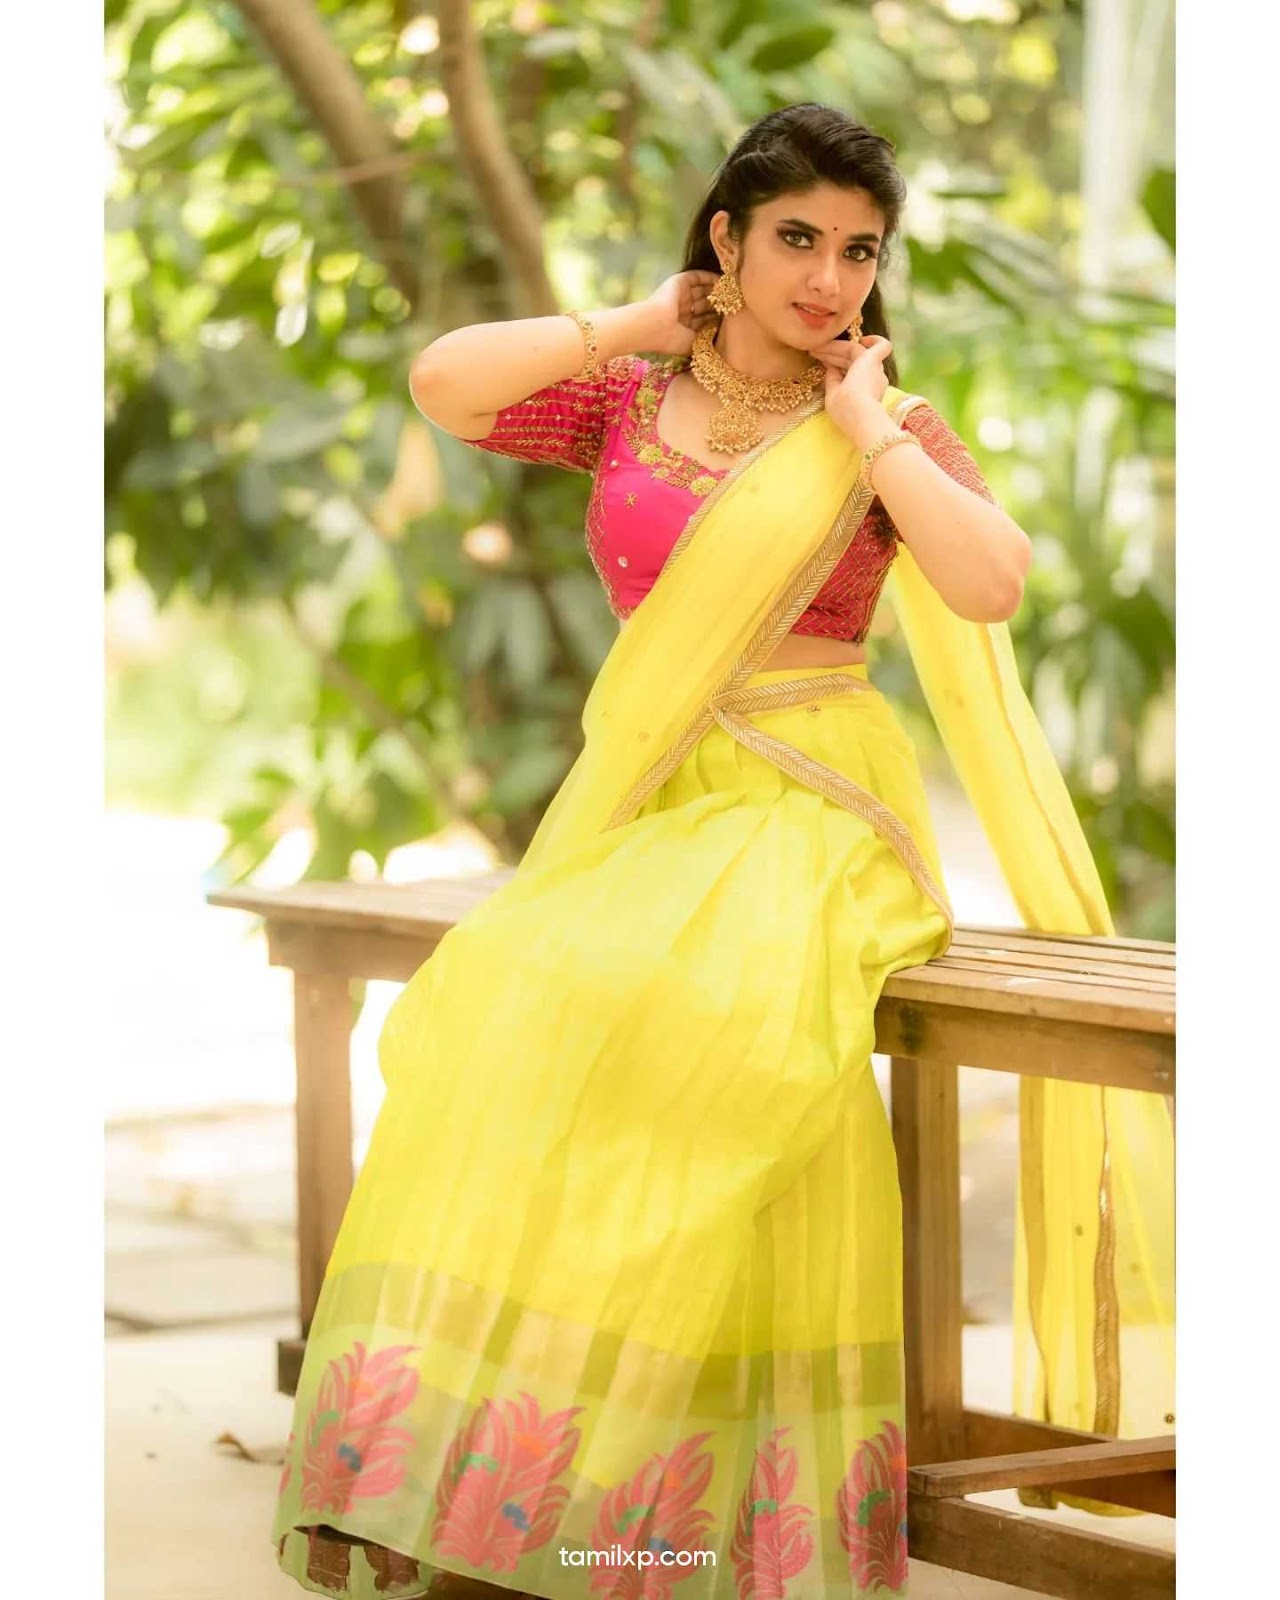 Actress pragya nagra photos